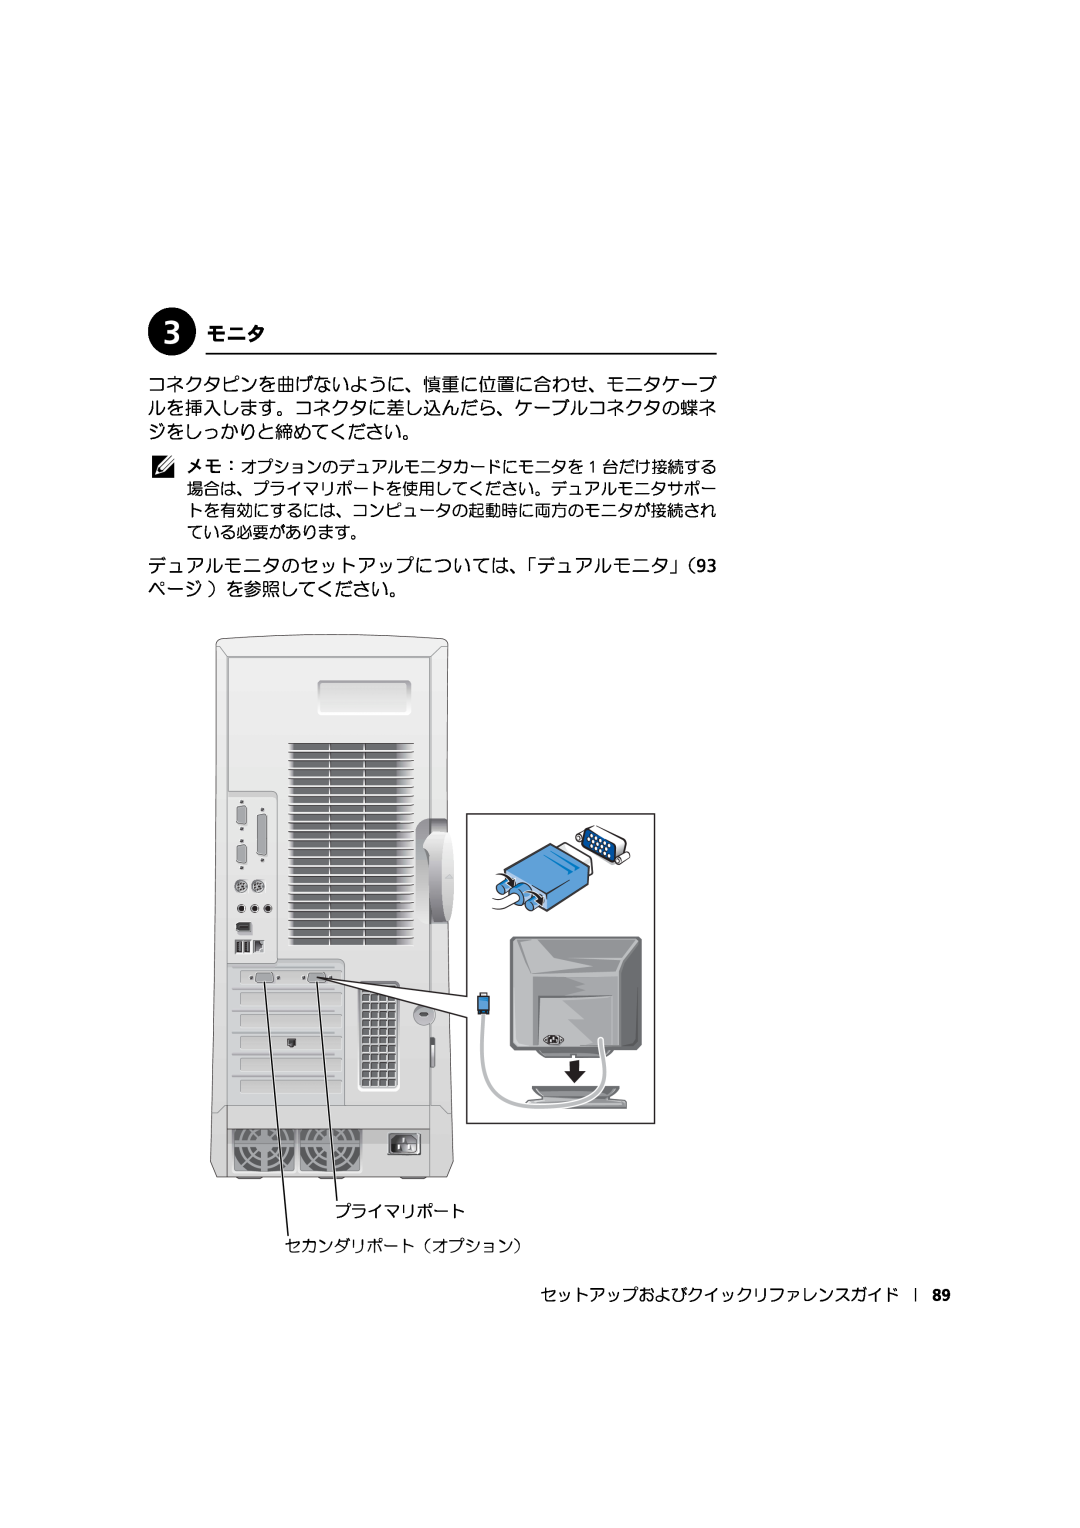 Dell 533CX manual 3 モニタ, デュアルモニタのセットアップについては、「デュアルモニタ」（93 ページ ）を参照してください。 